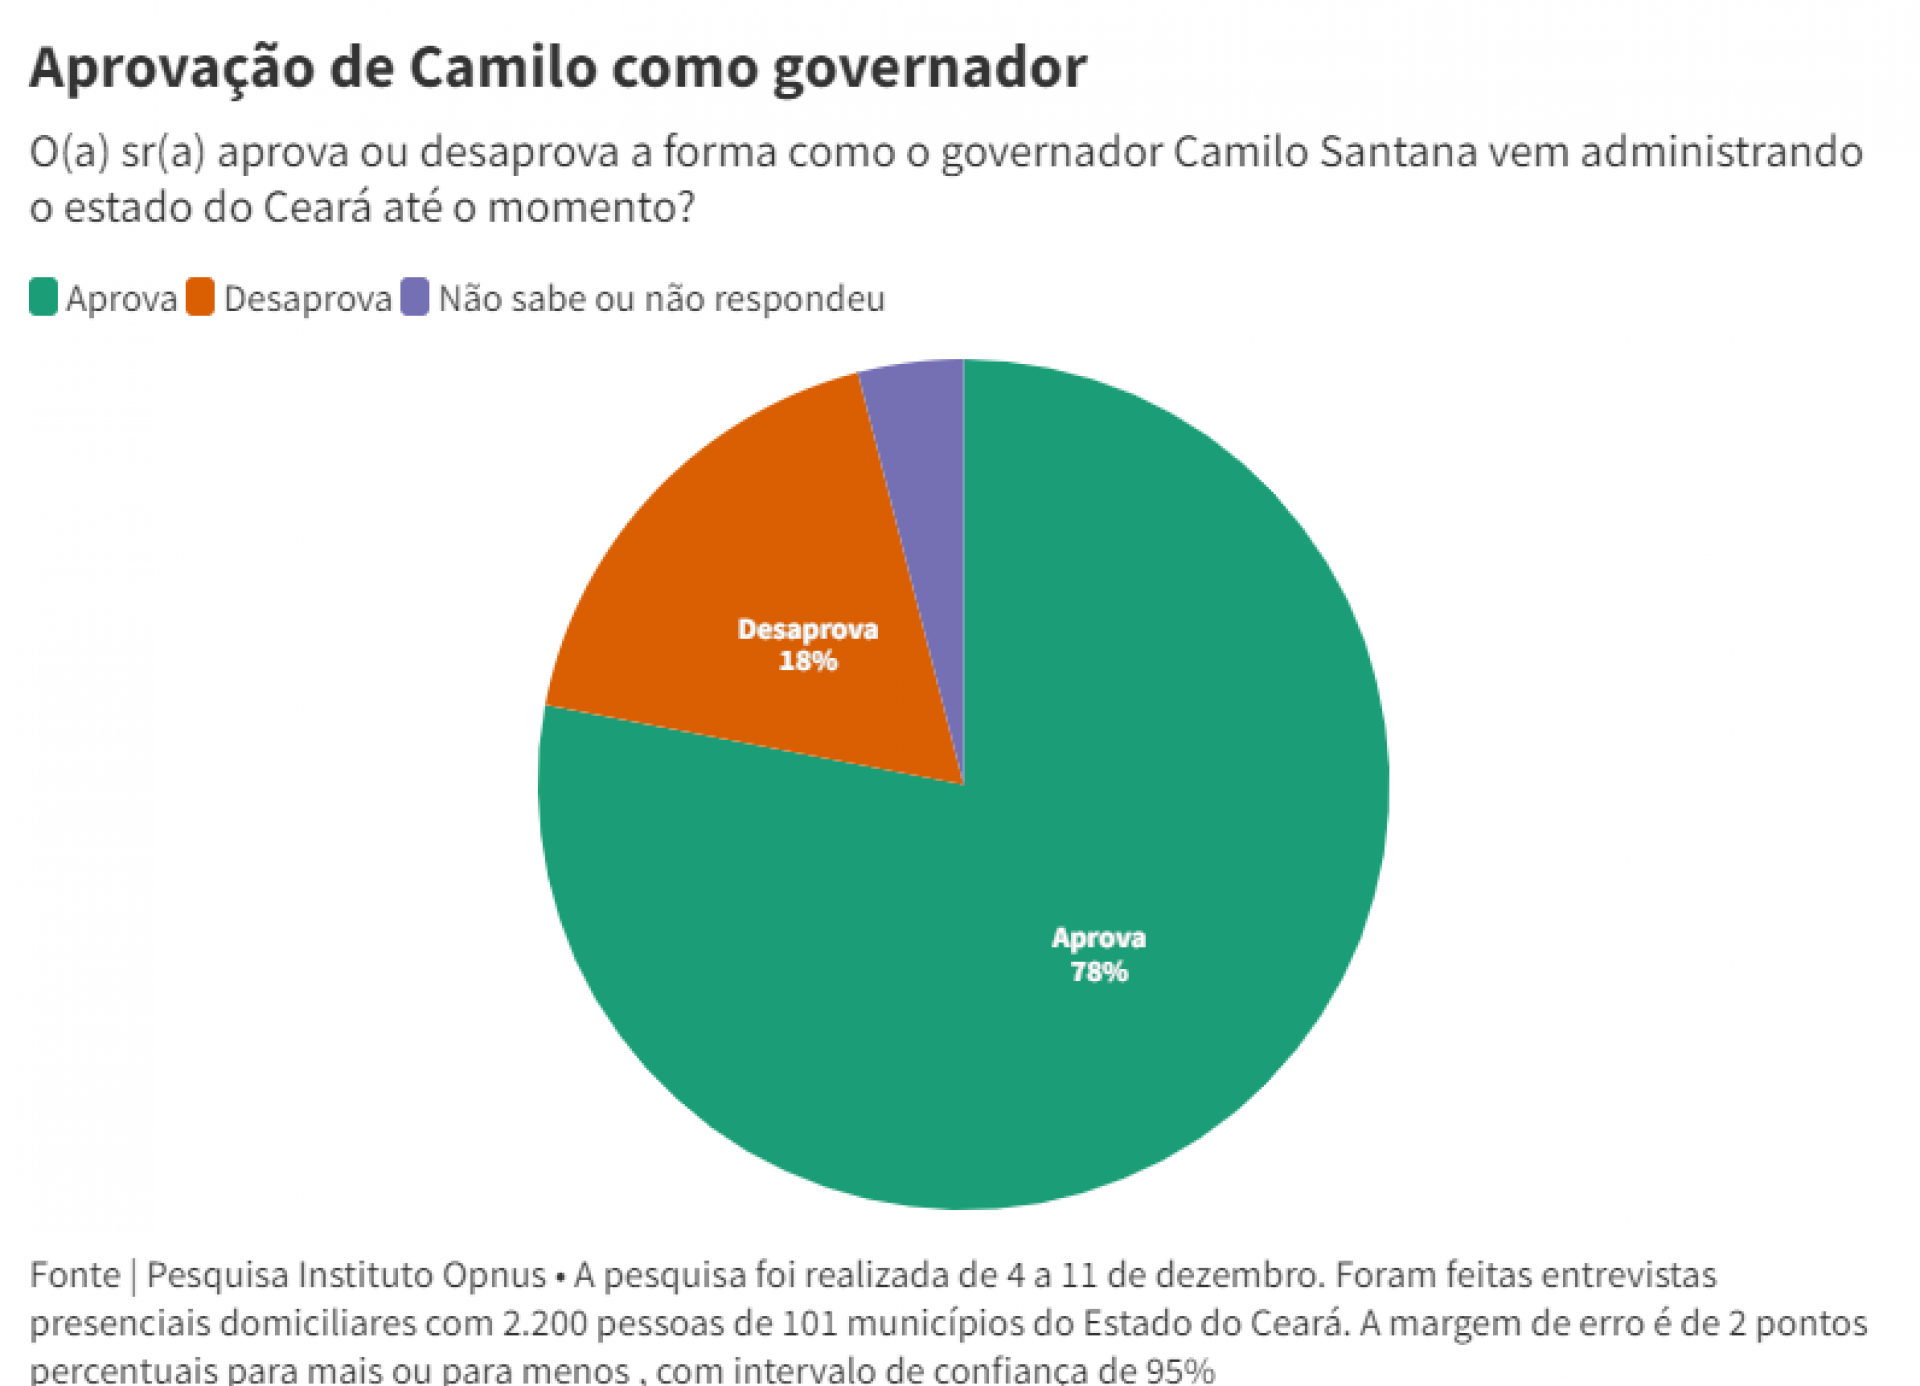 Aprovação e desaprovação do governador Camilo Santana